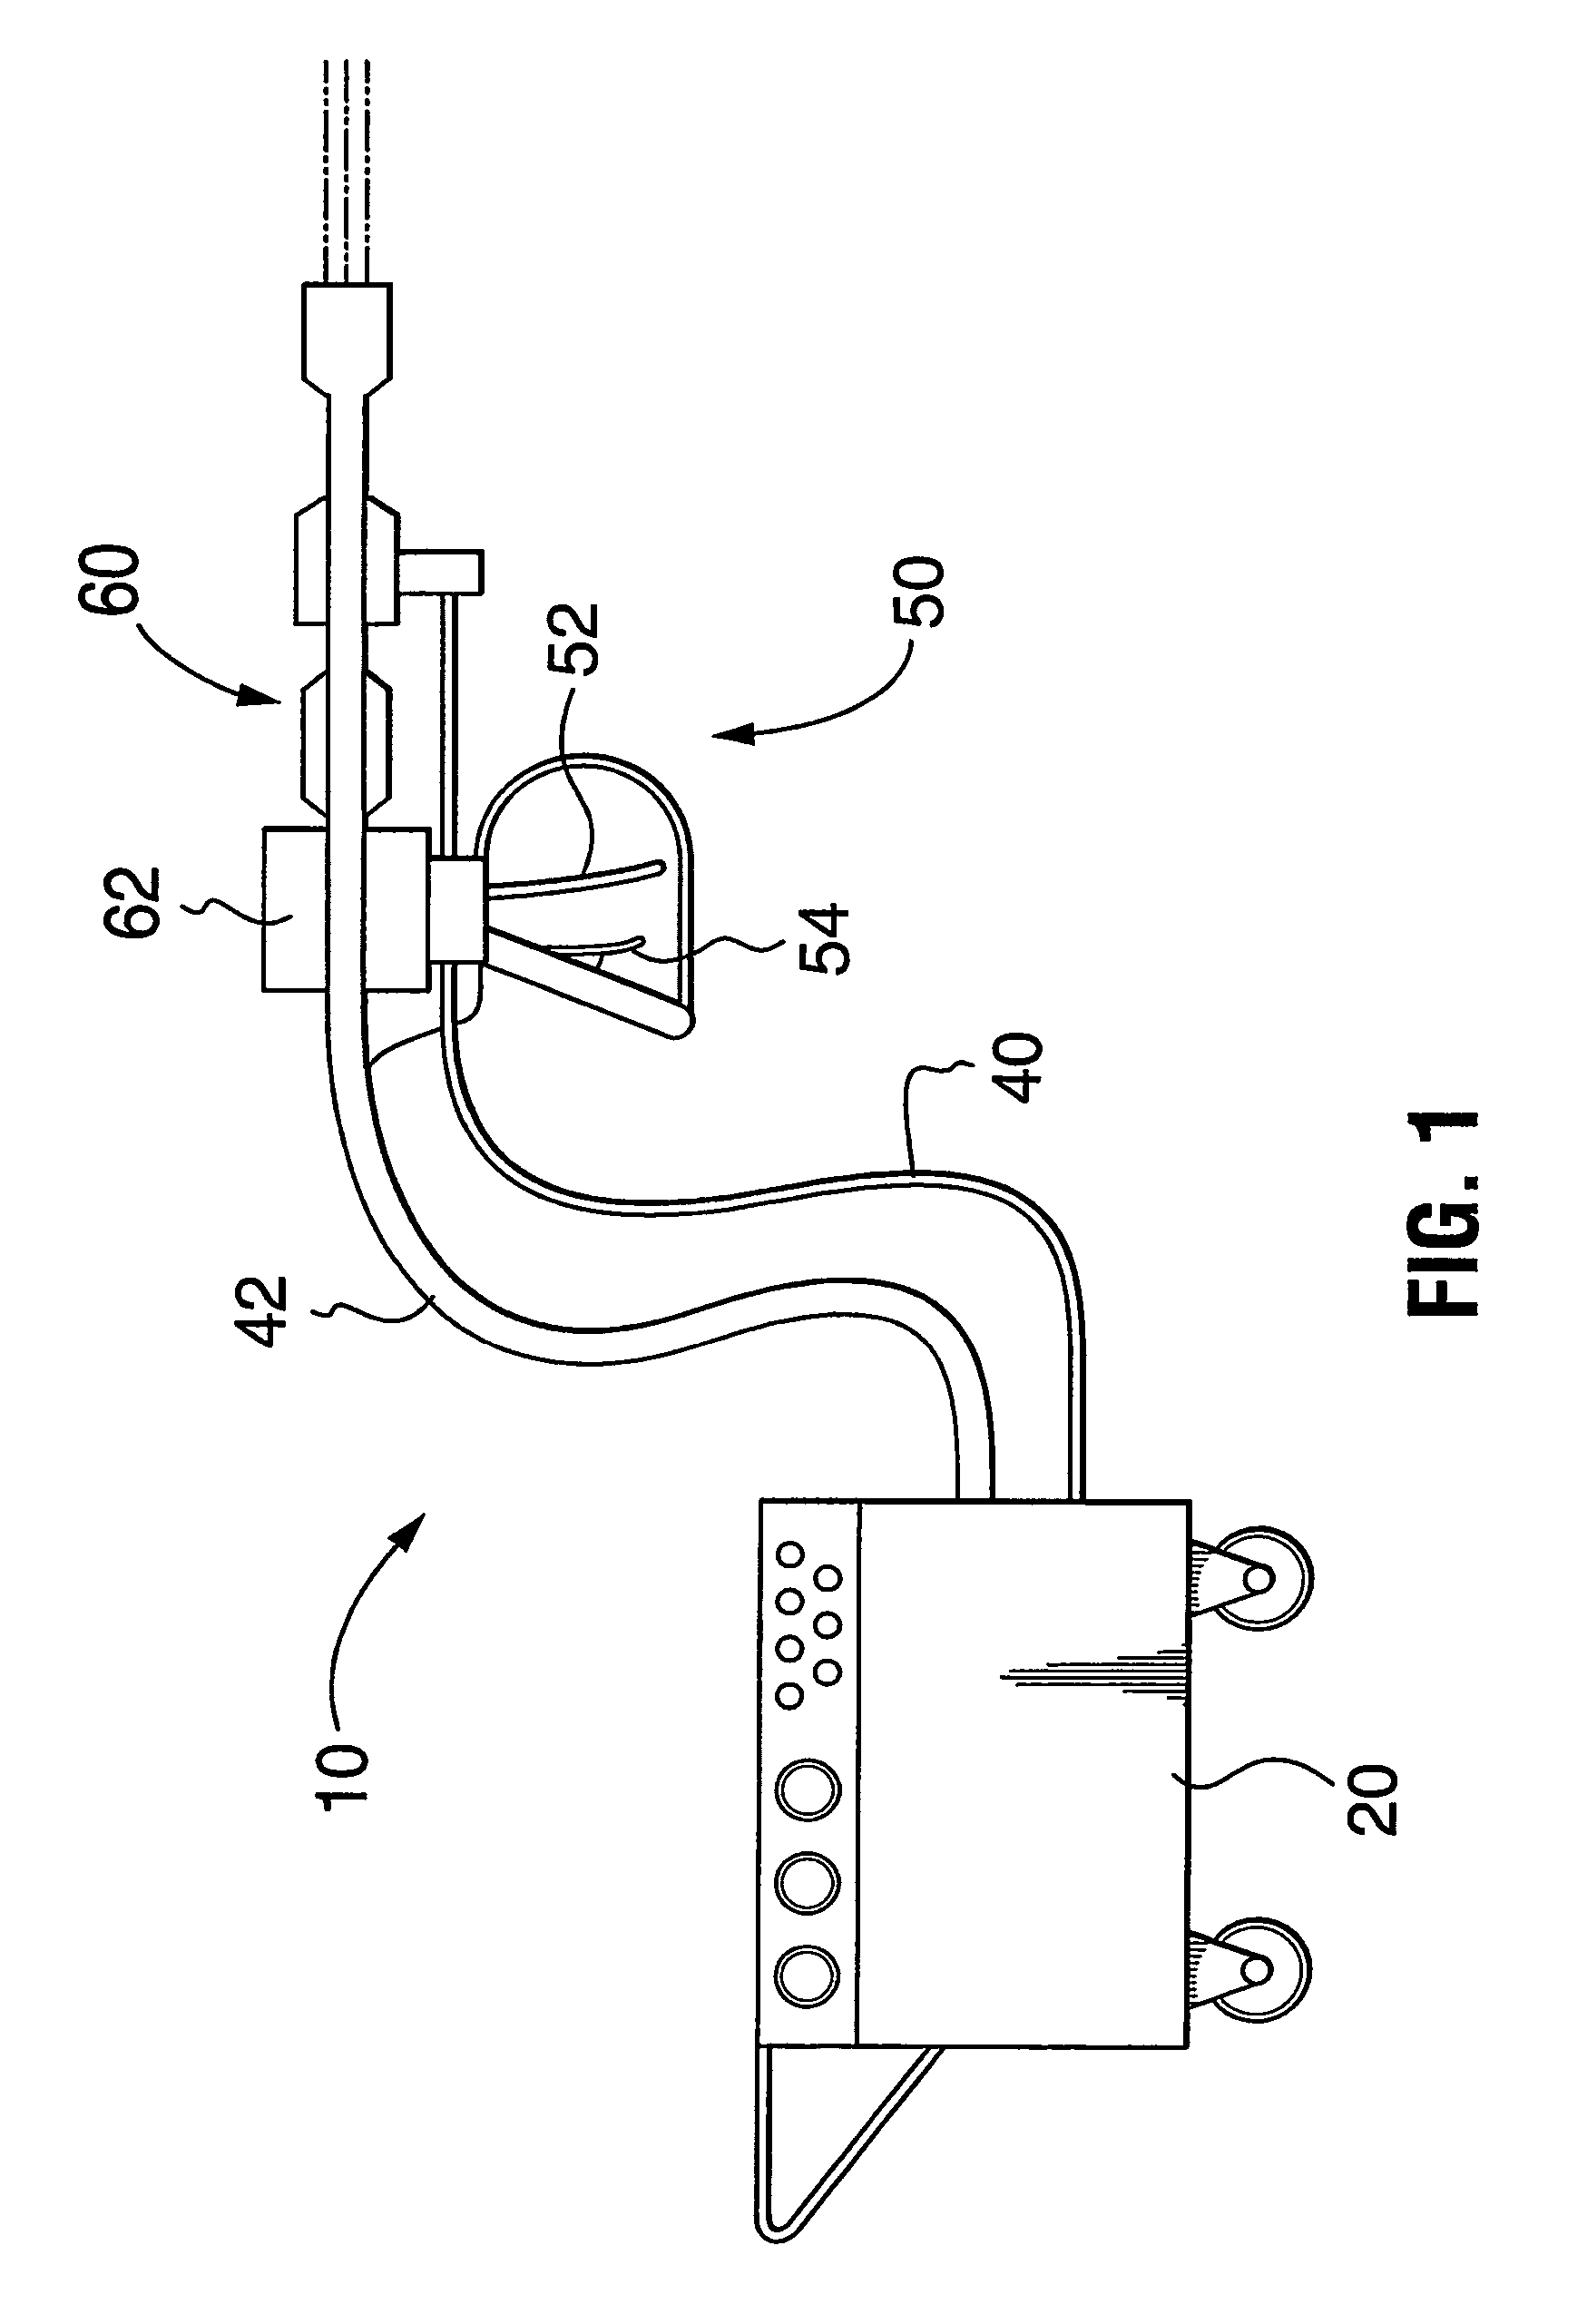 Ultrasonic waterjet apparatus